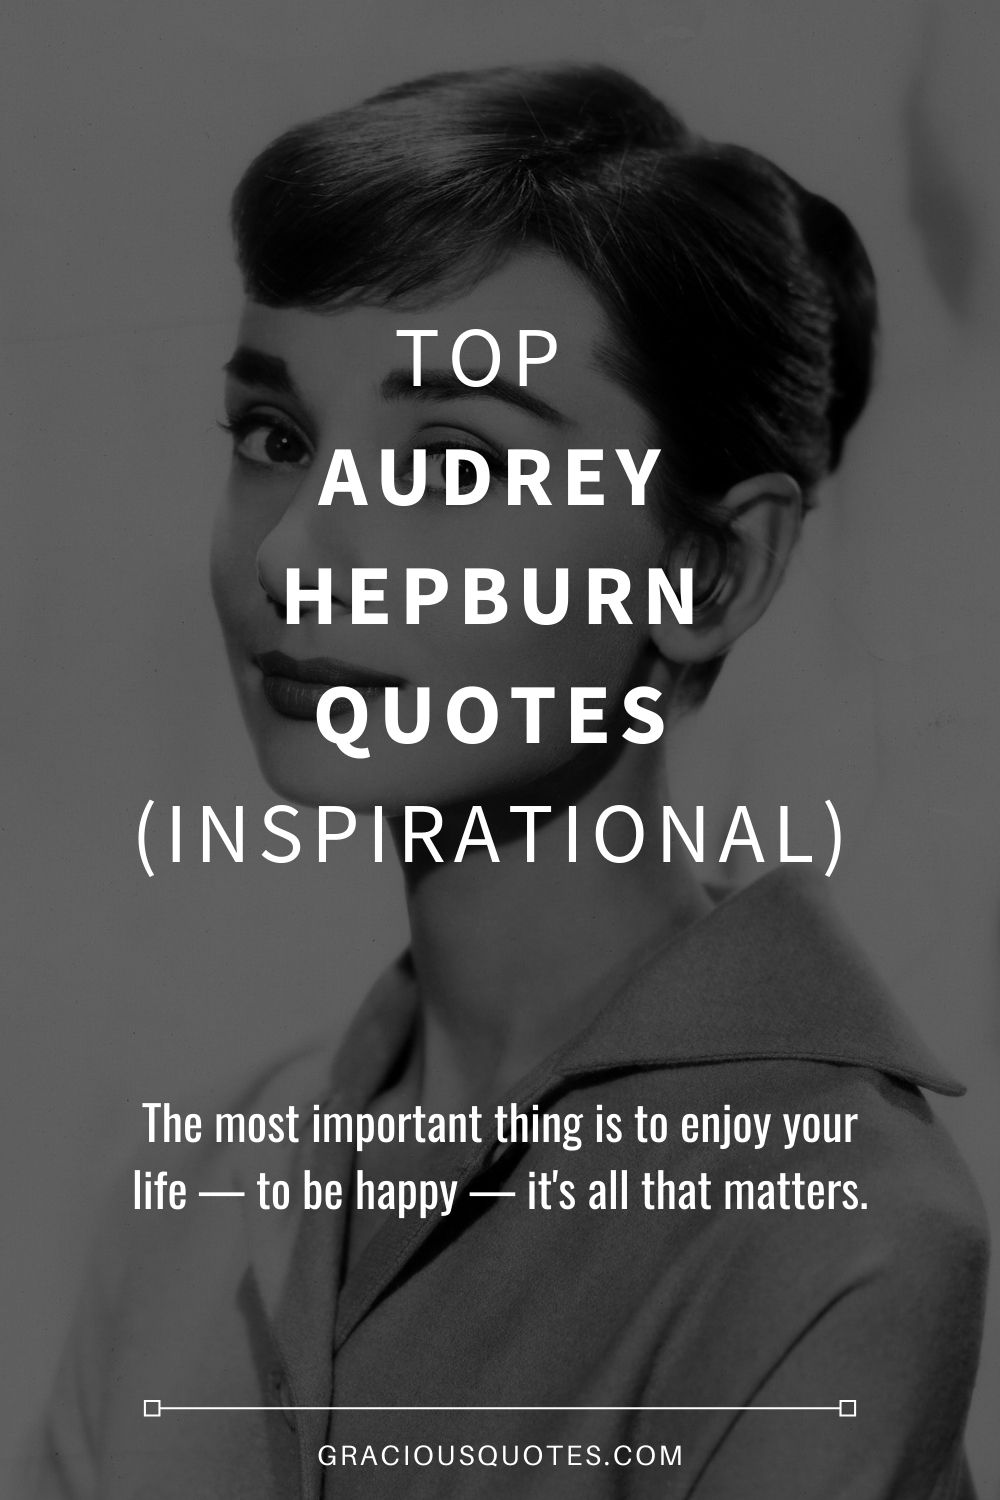 Top Audrey Hepburn​ Quotes (INSPIRATIONAL) - Gracious Quotes